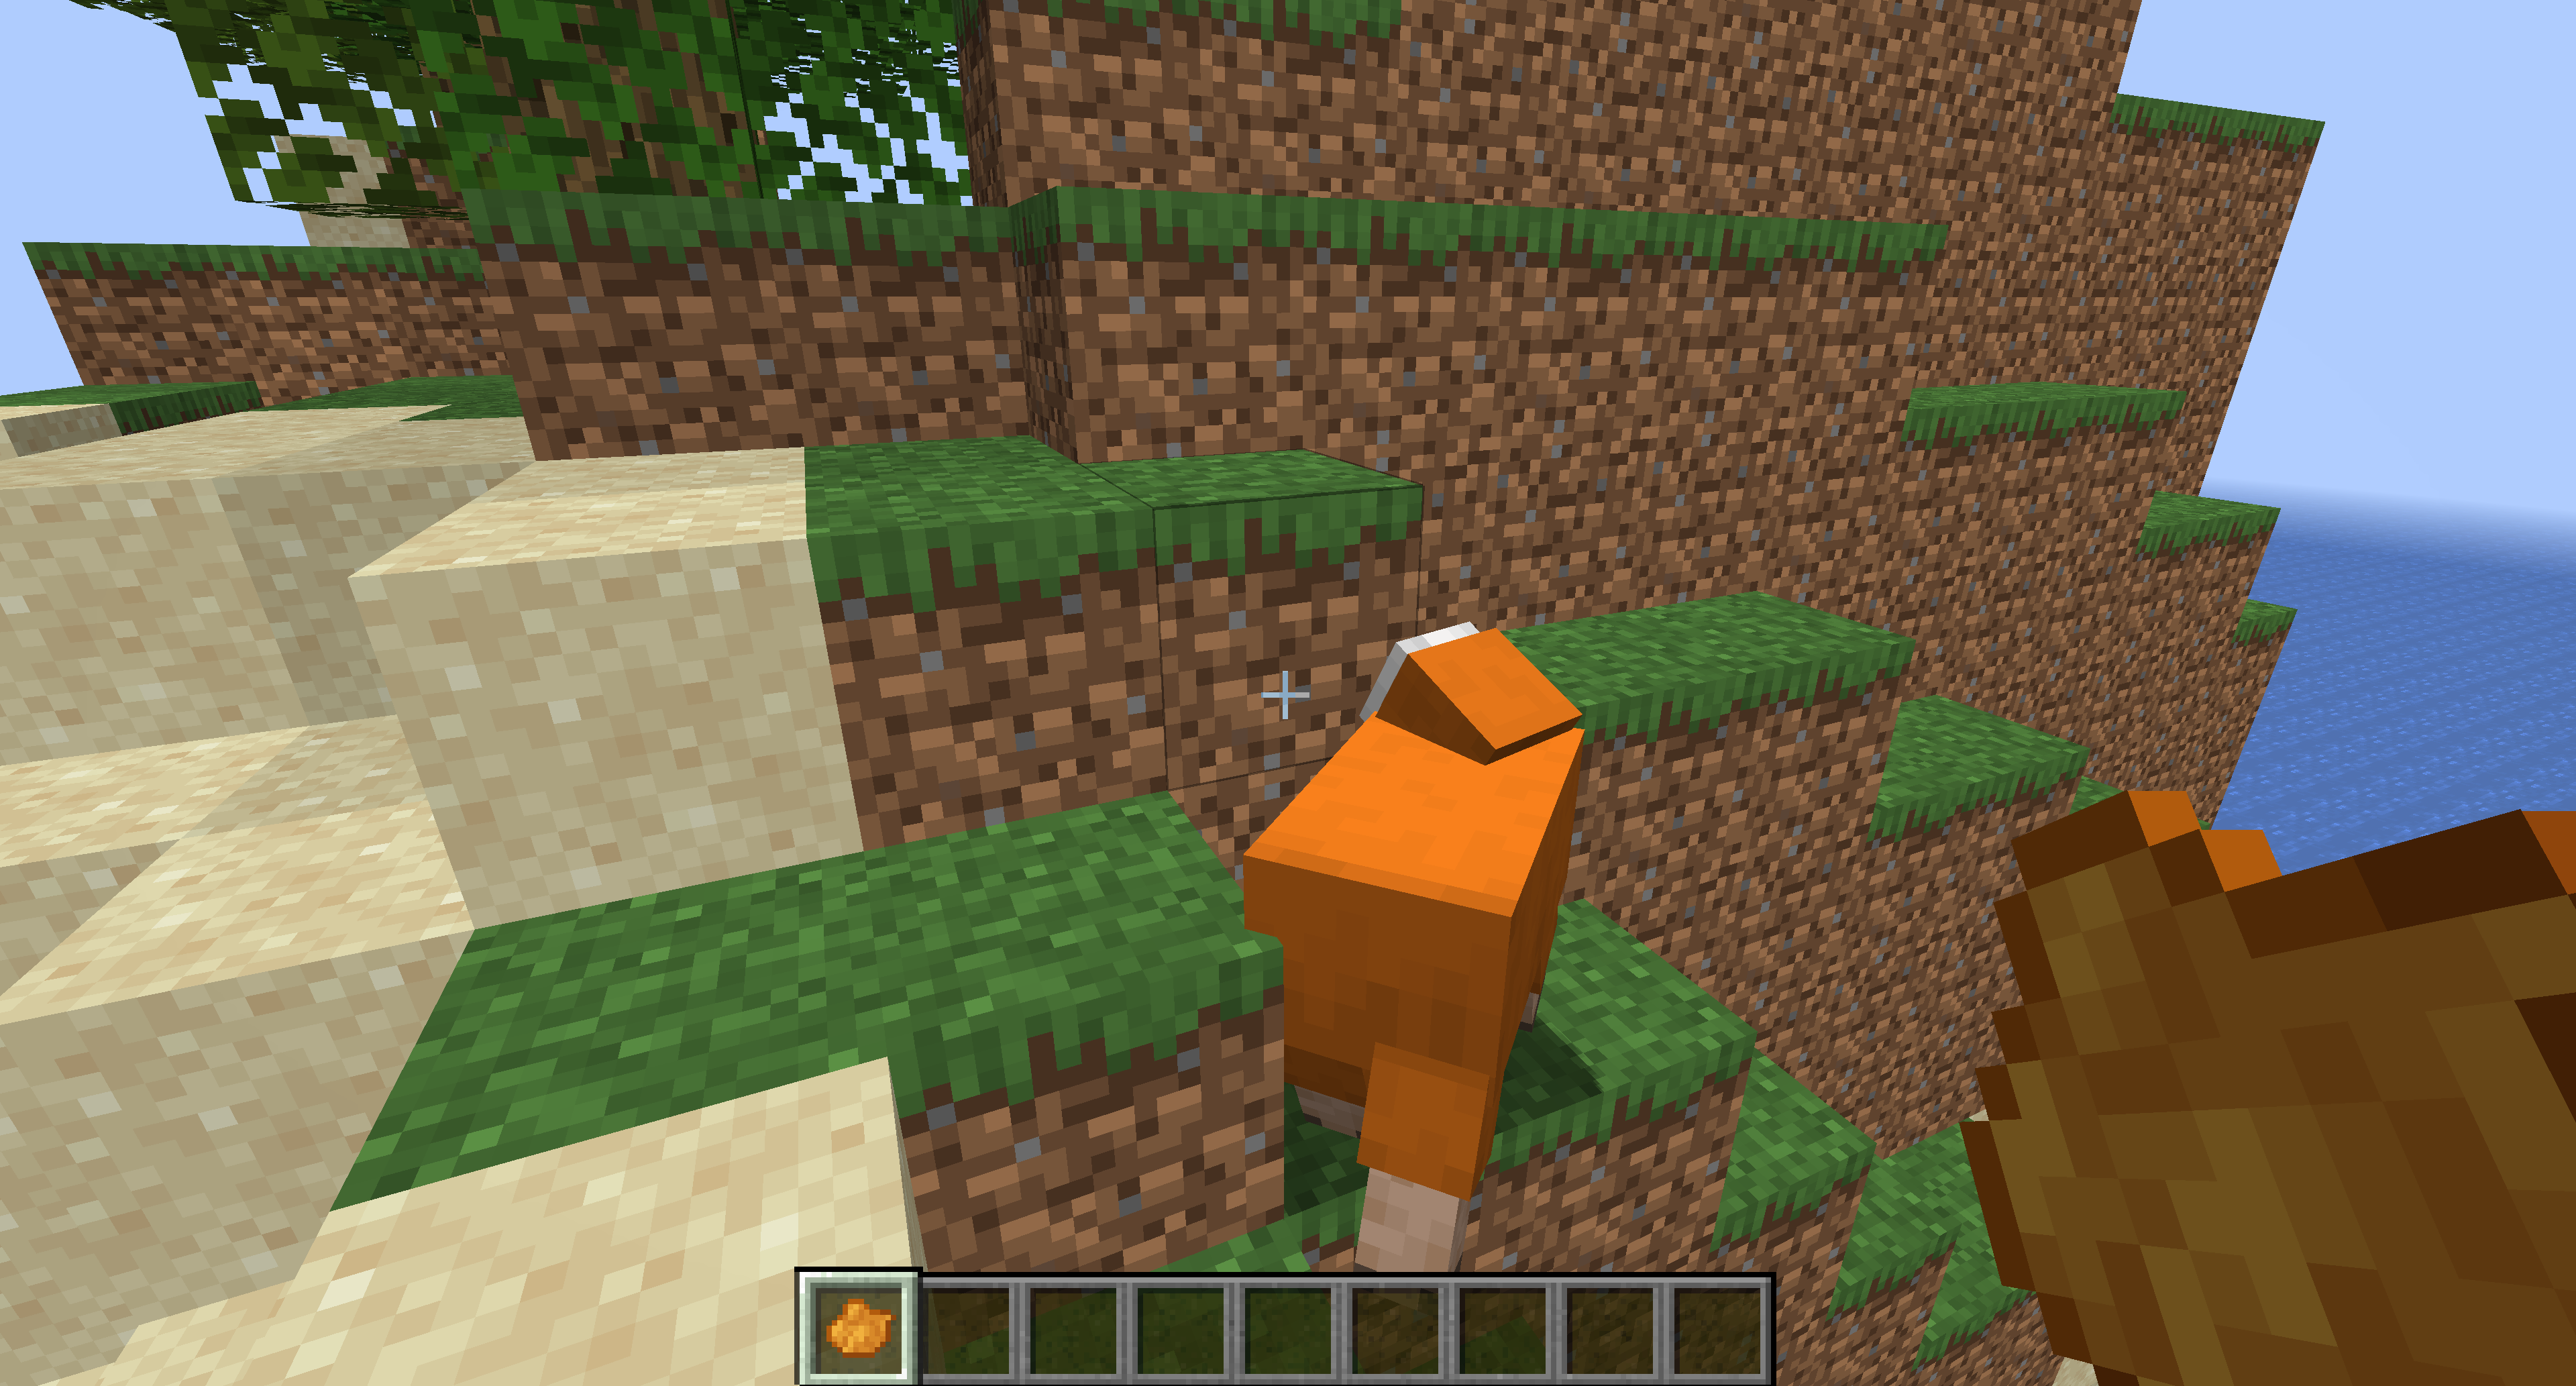 How to get orange dye in Minecraft